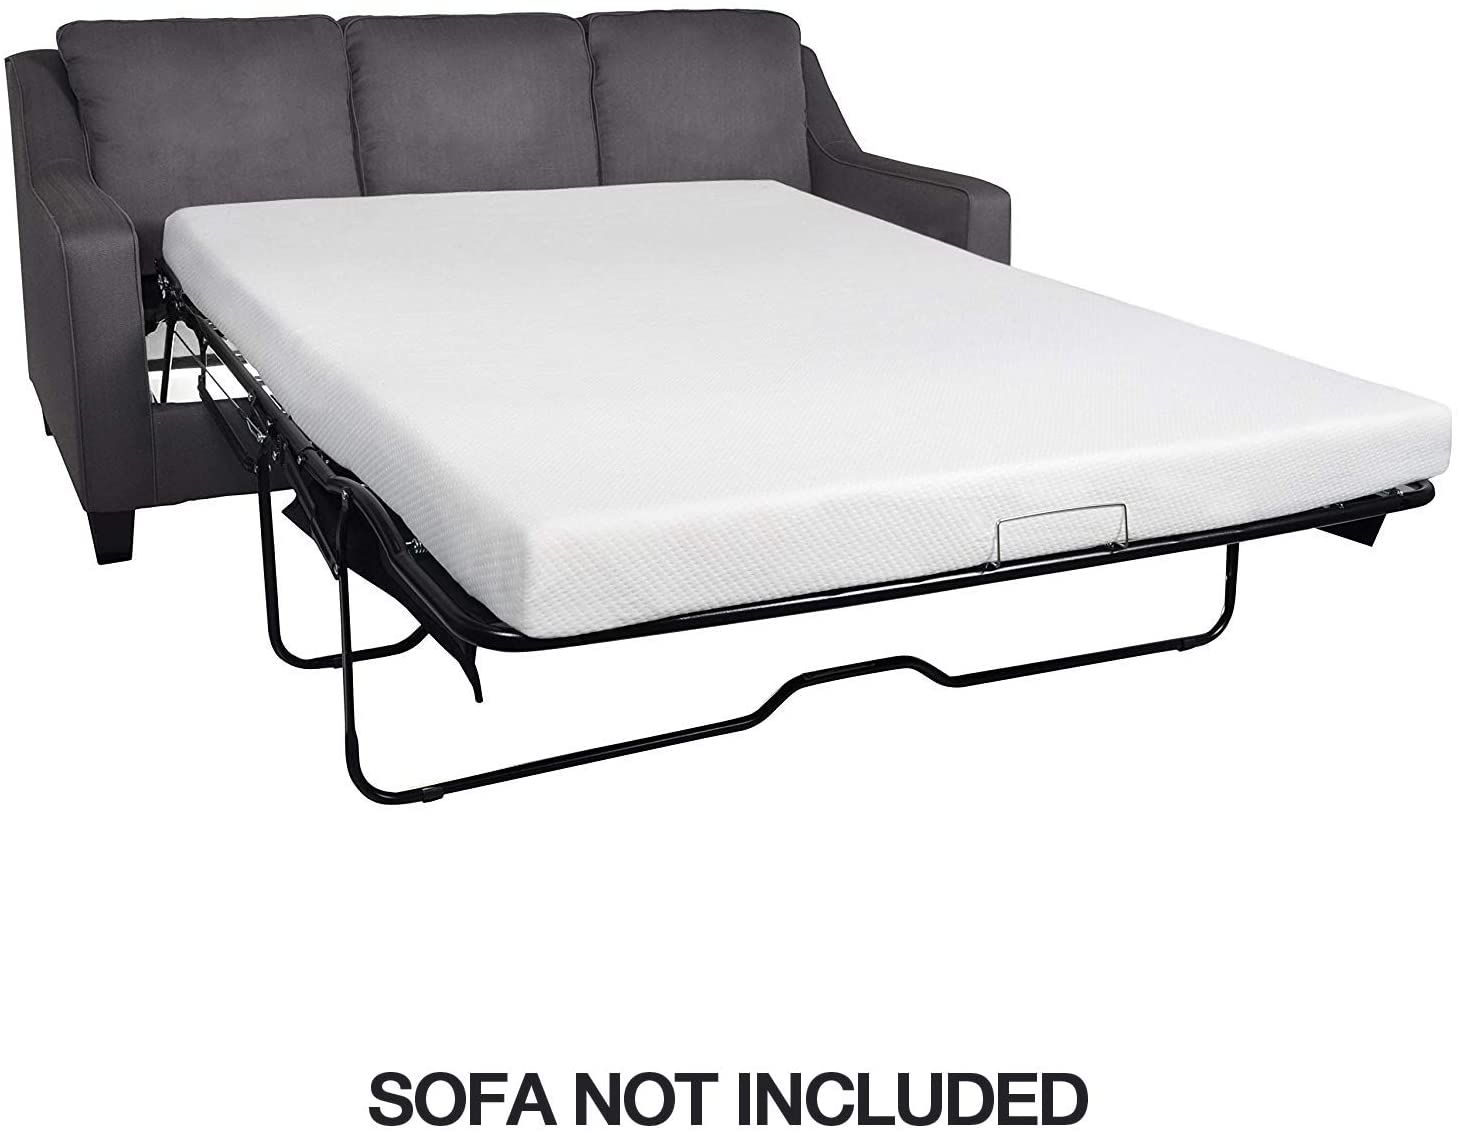 replacement sofa bed matress